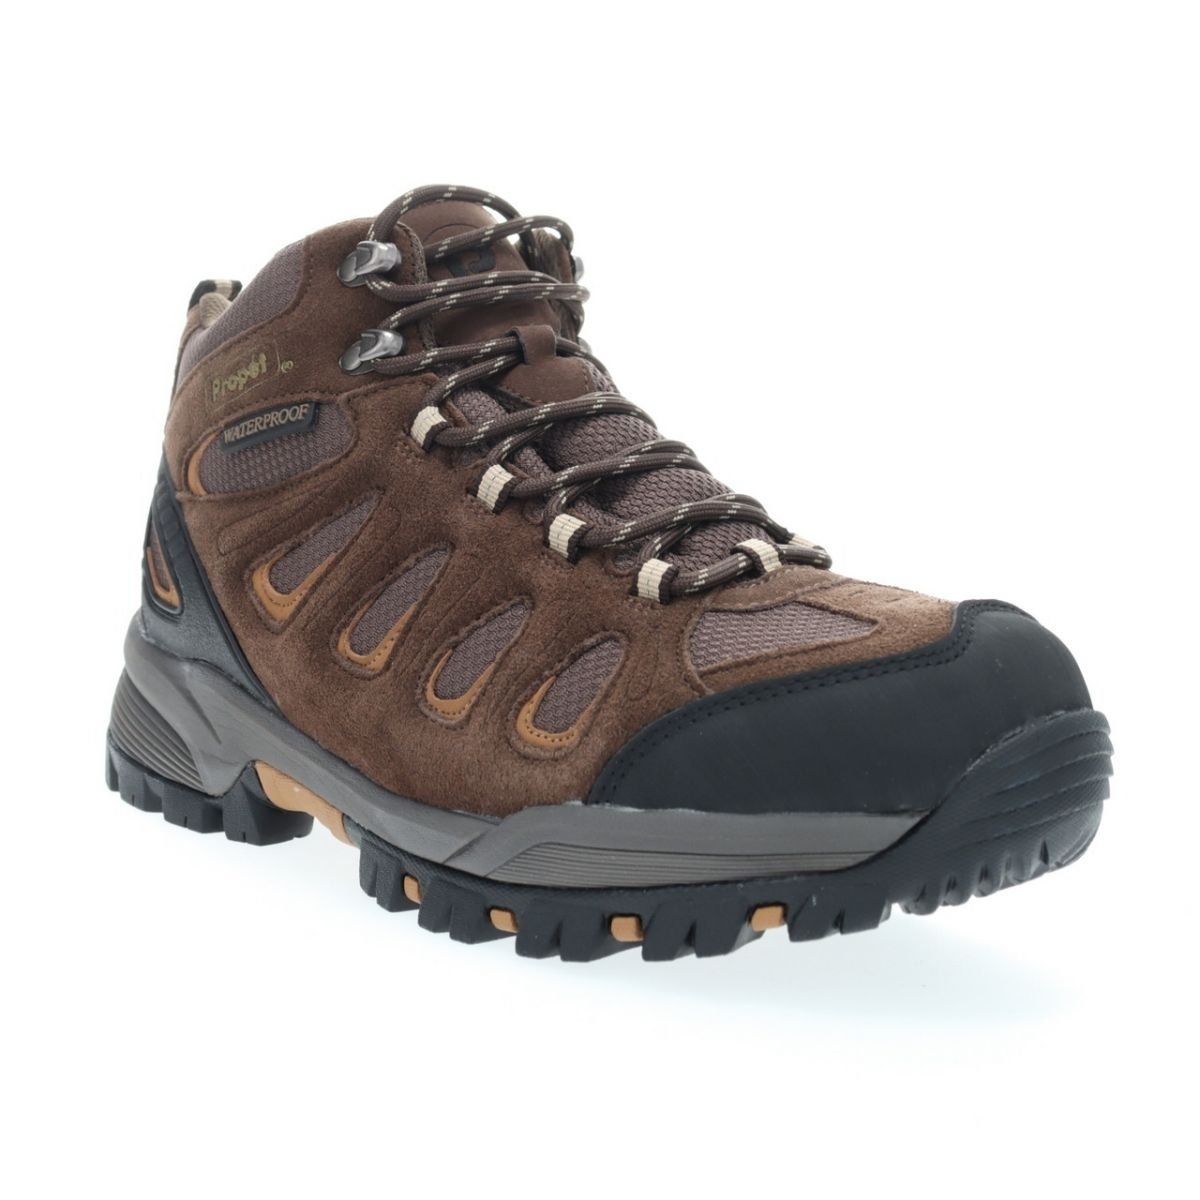 Propet Men's Ridge Walker Hiking Boot Brown - M3599BR 8 XX US Men BROWN - BROWN, 10.5 Wide